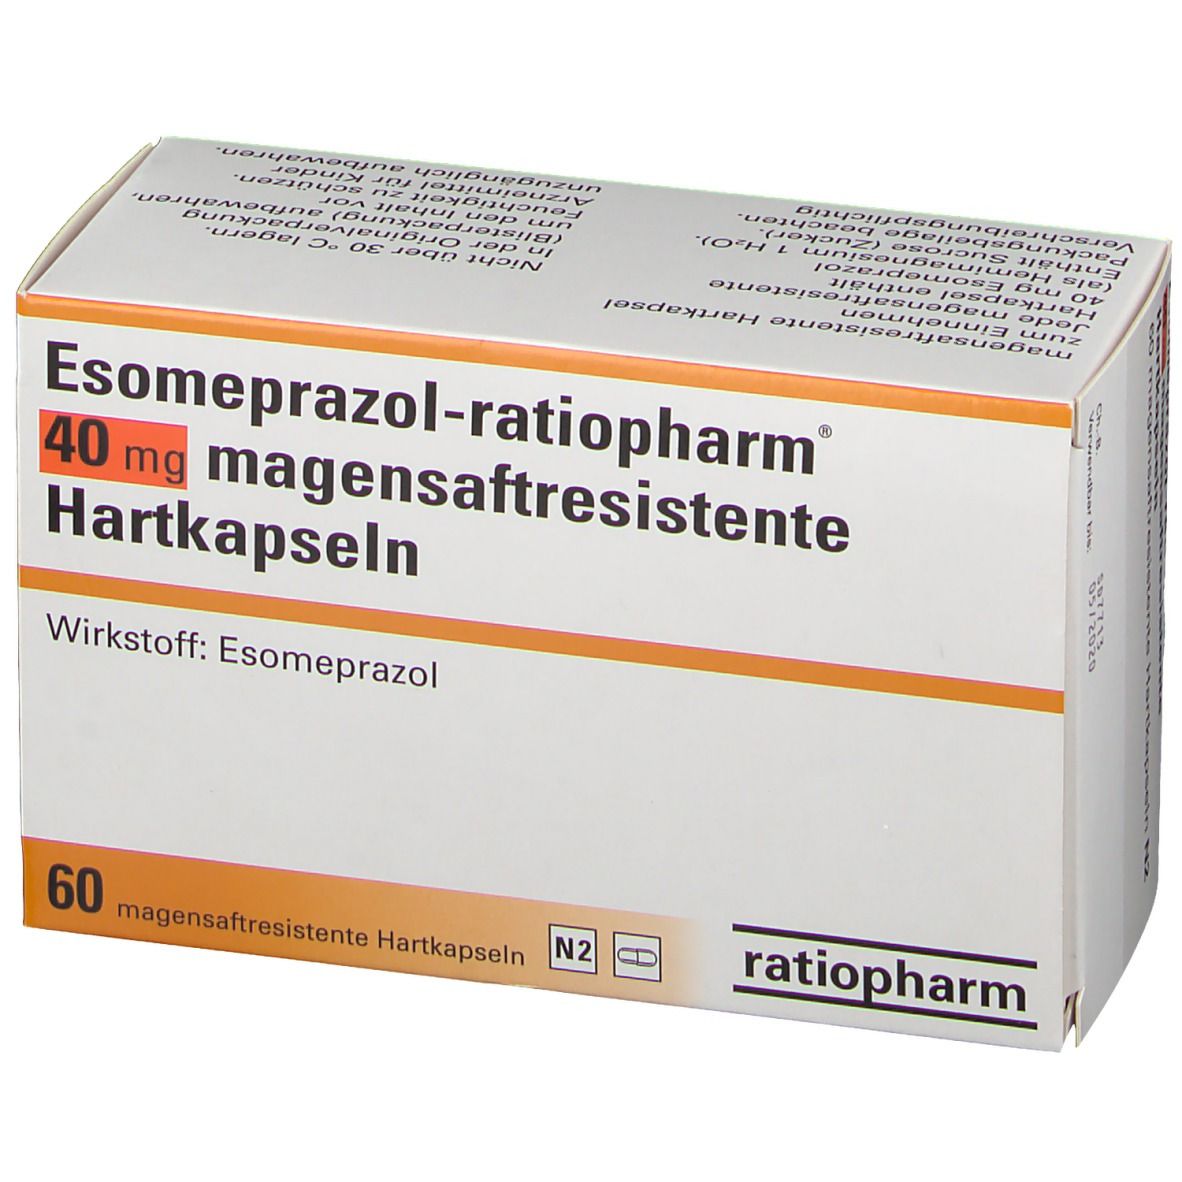 Esomeprazol-ratiopharm® 40 mg